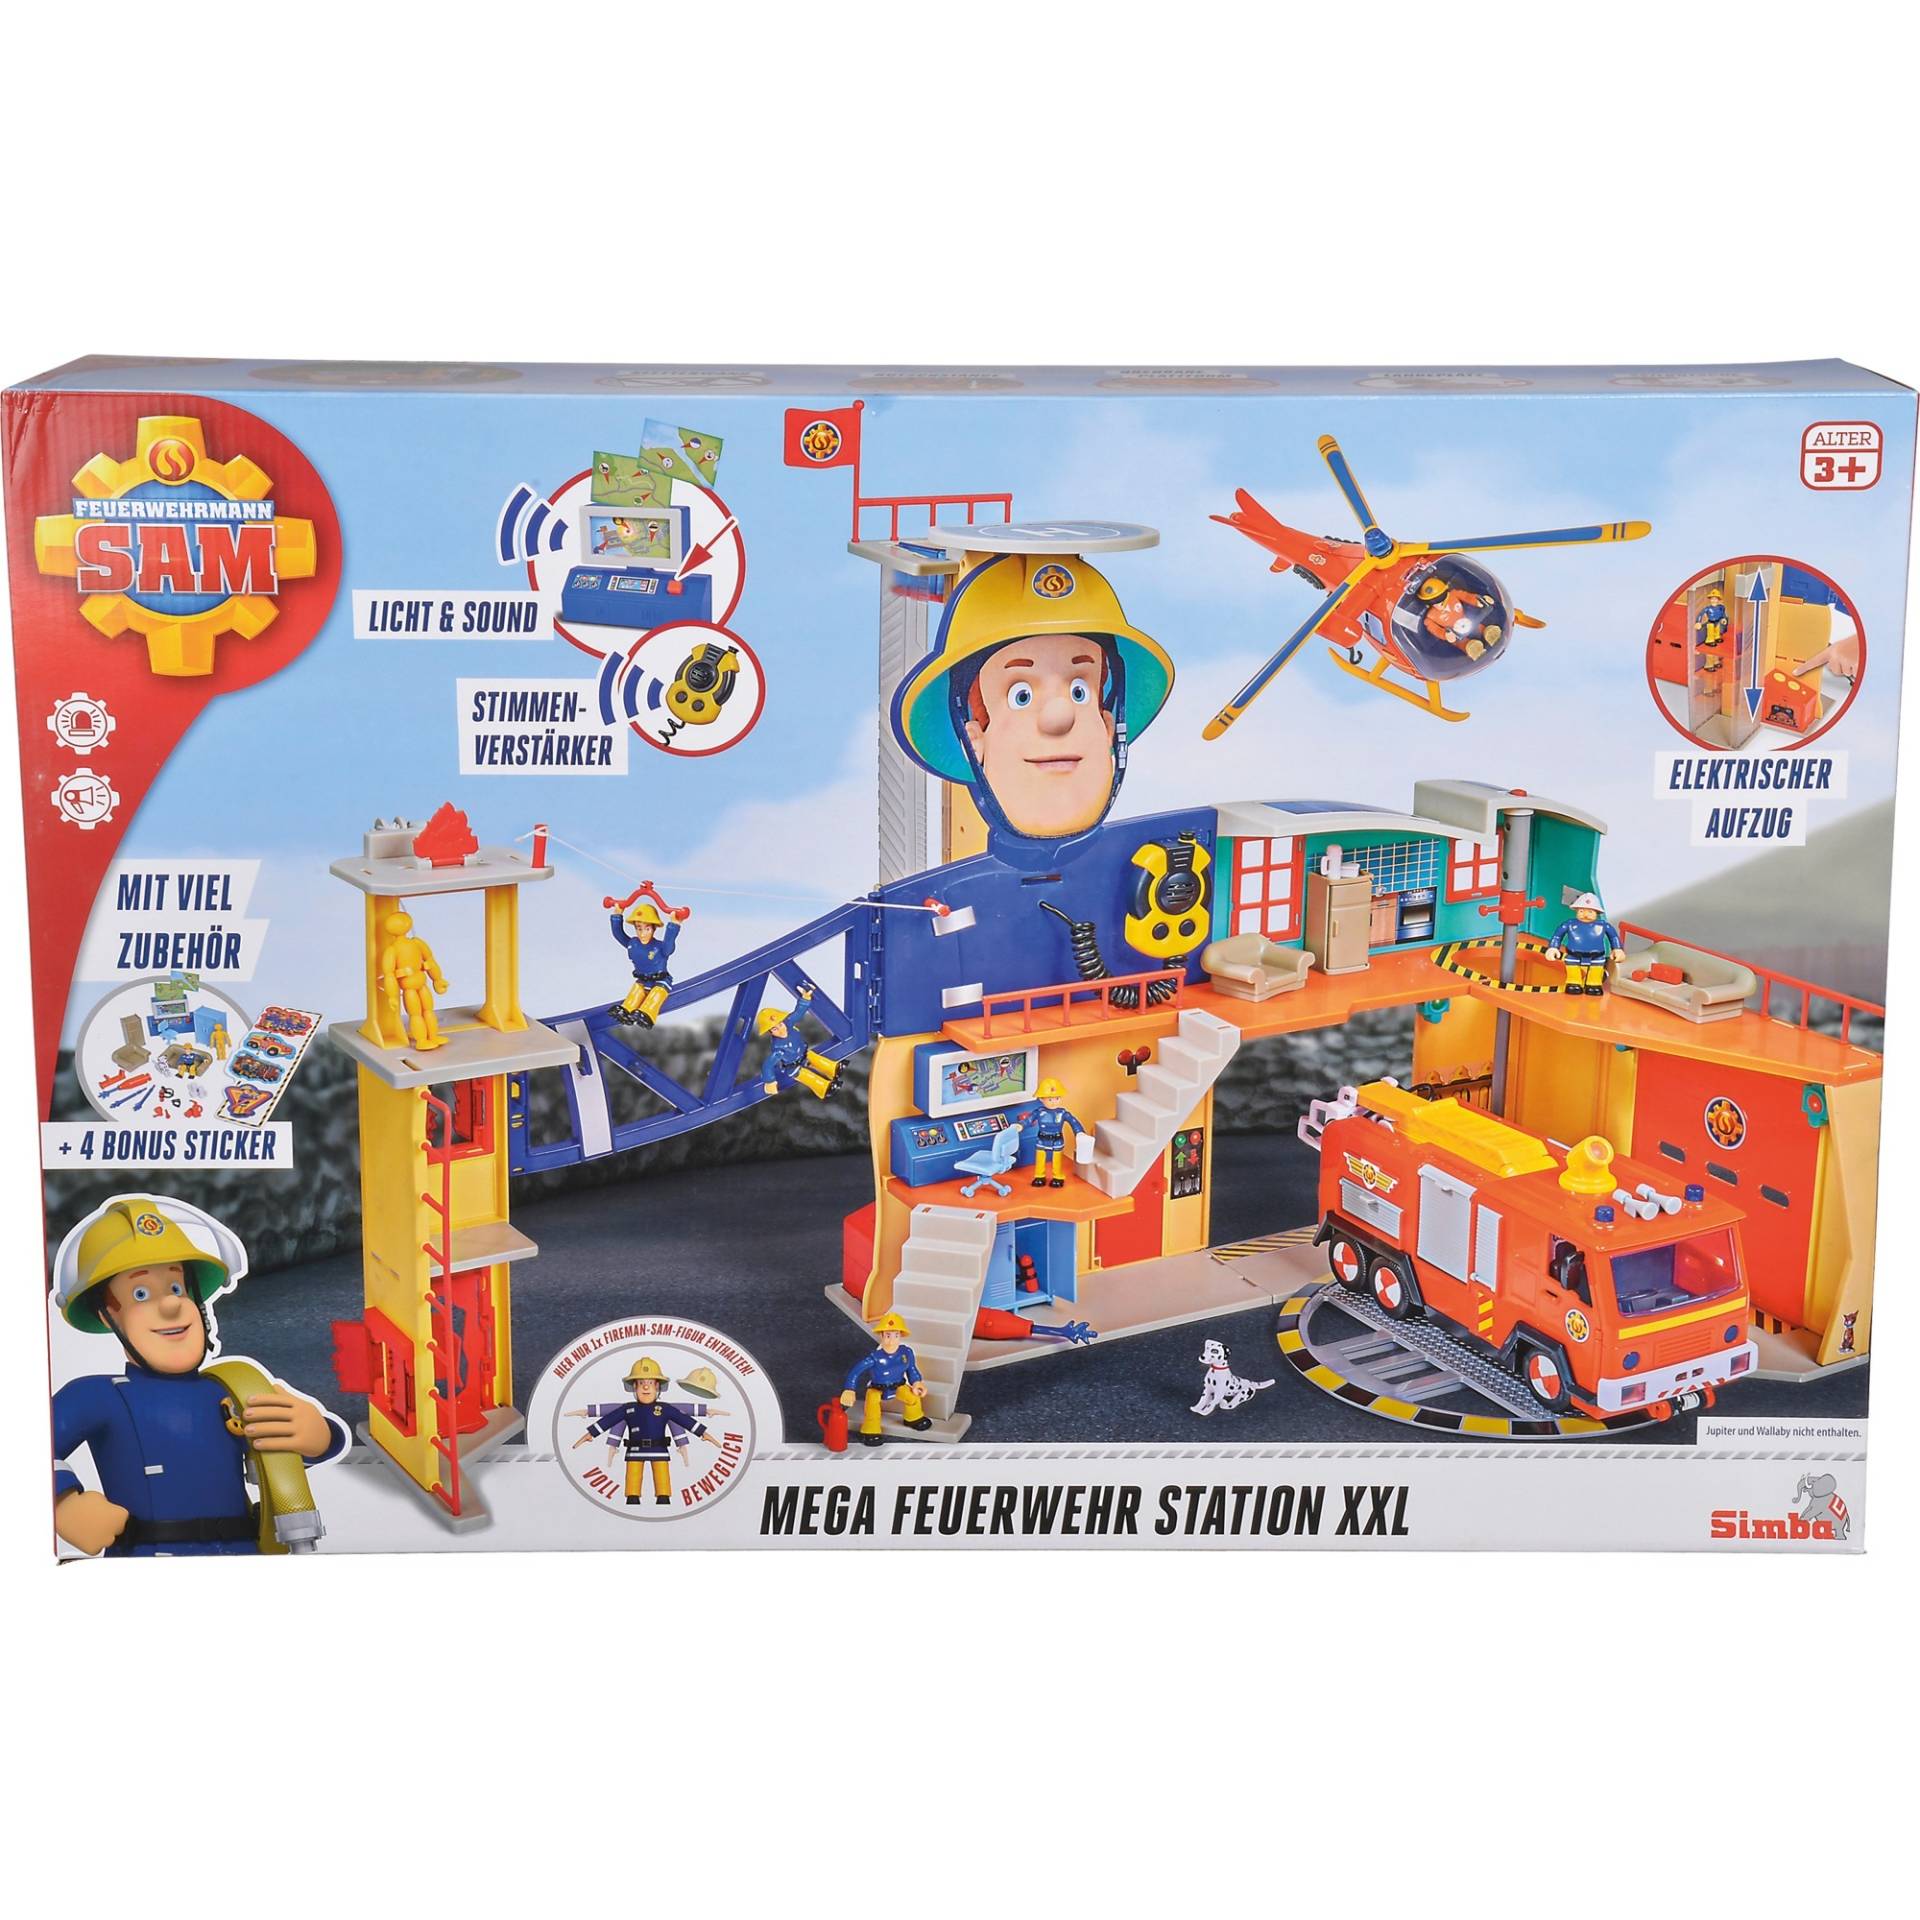 Feuerwehrmann Sam Mega-Feuerwehrstation XXL, Spielgebäude von Simba